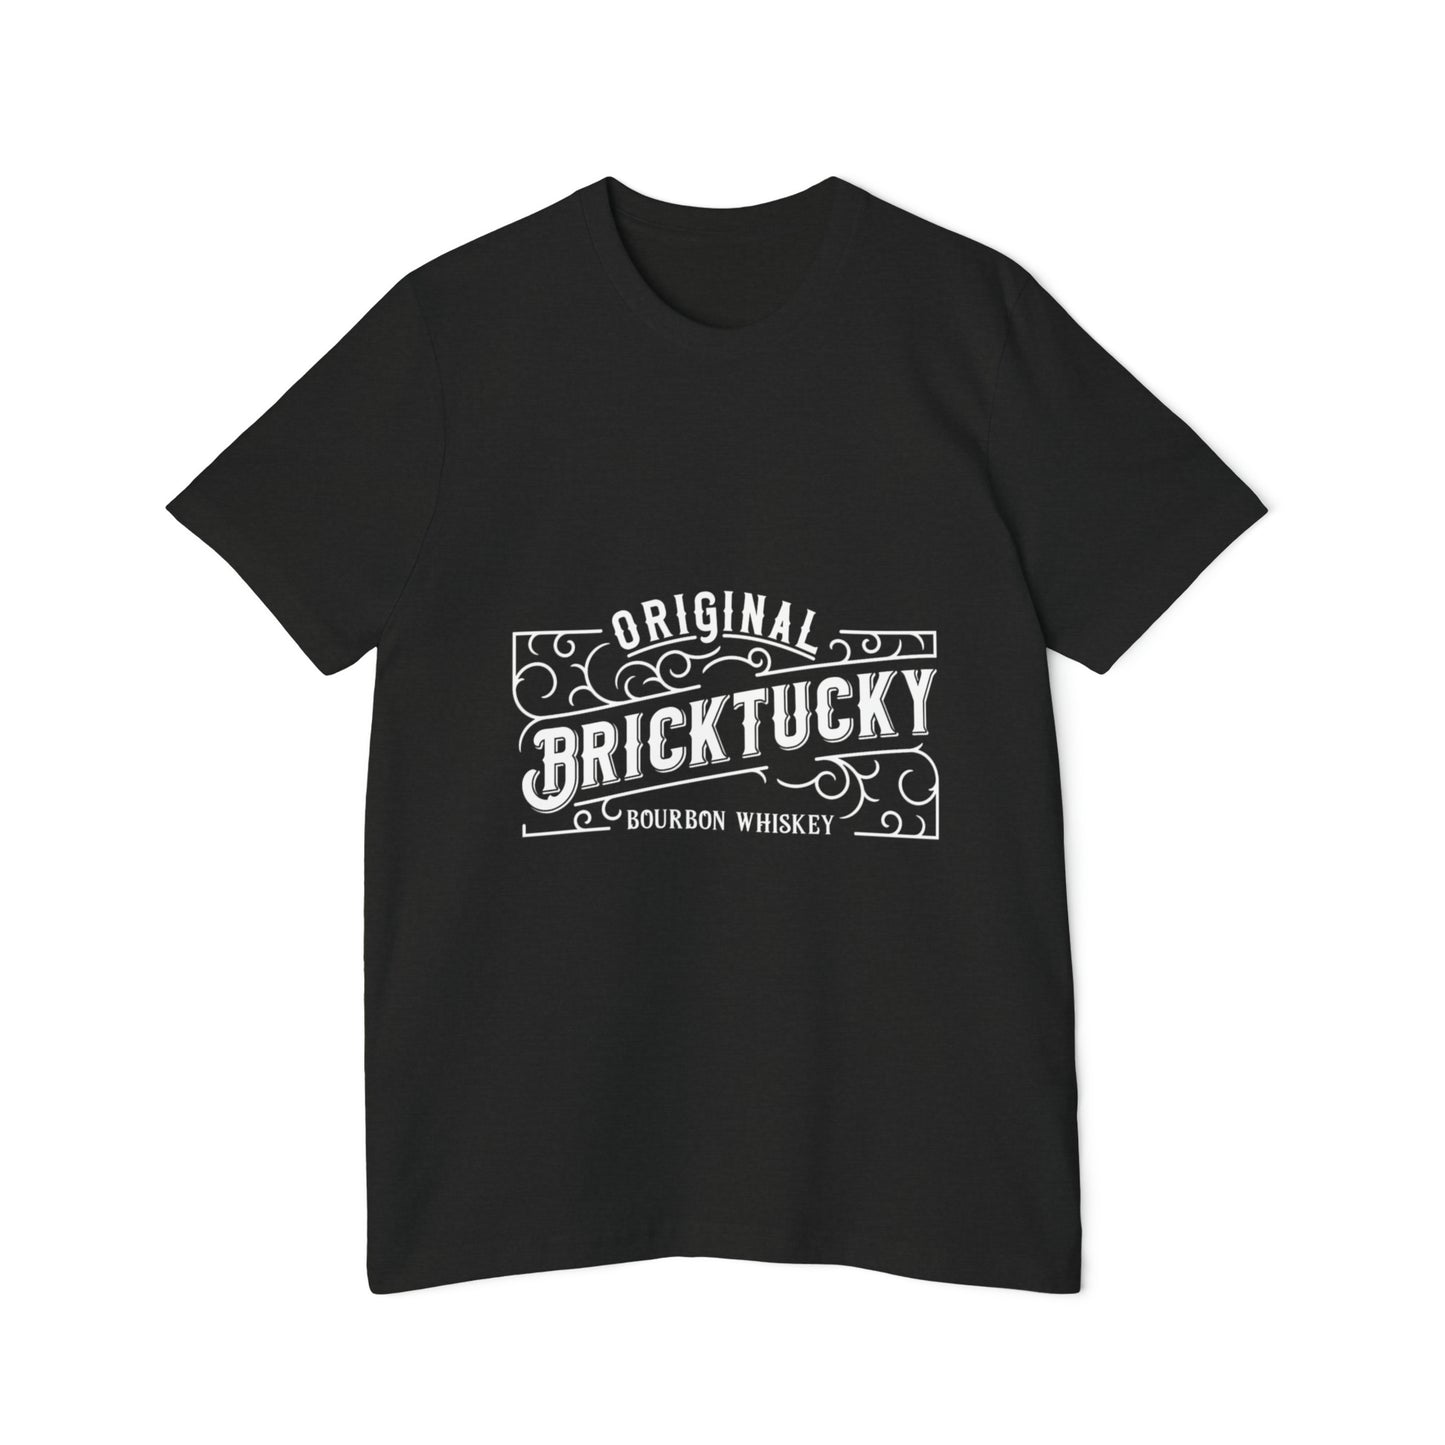 Bricktucky Bourbon Unisex Short-Sleeve Jersey T-Shirt Made in the USA